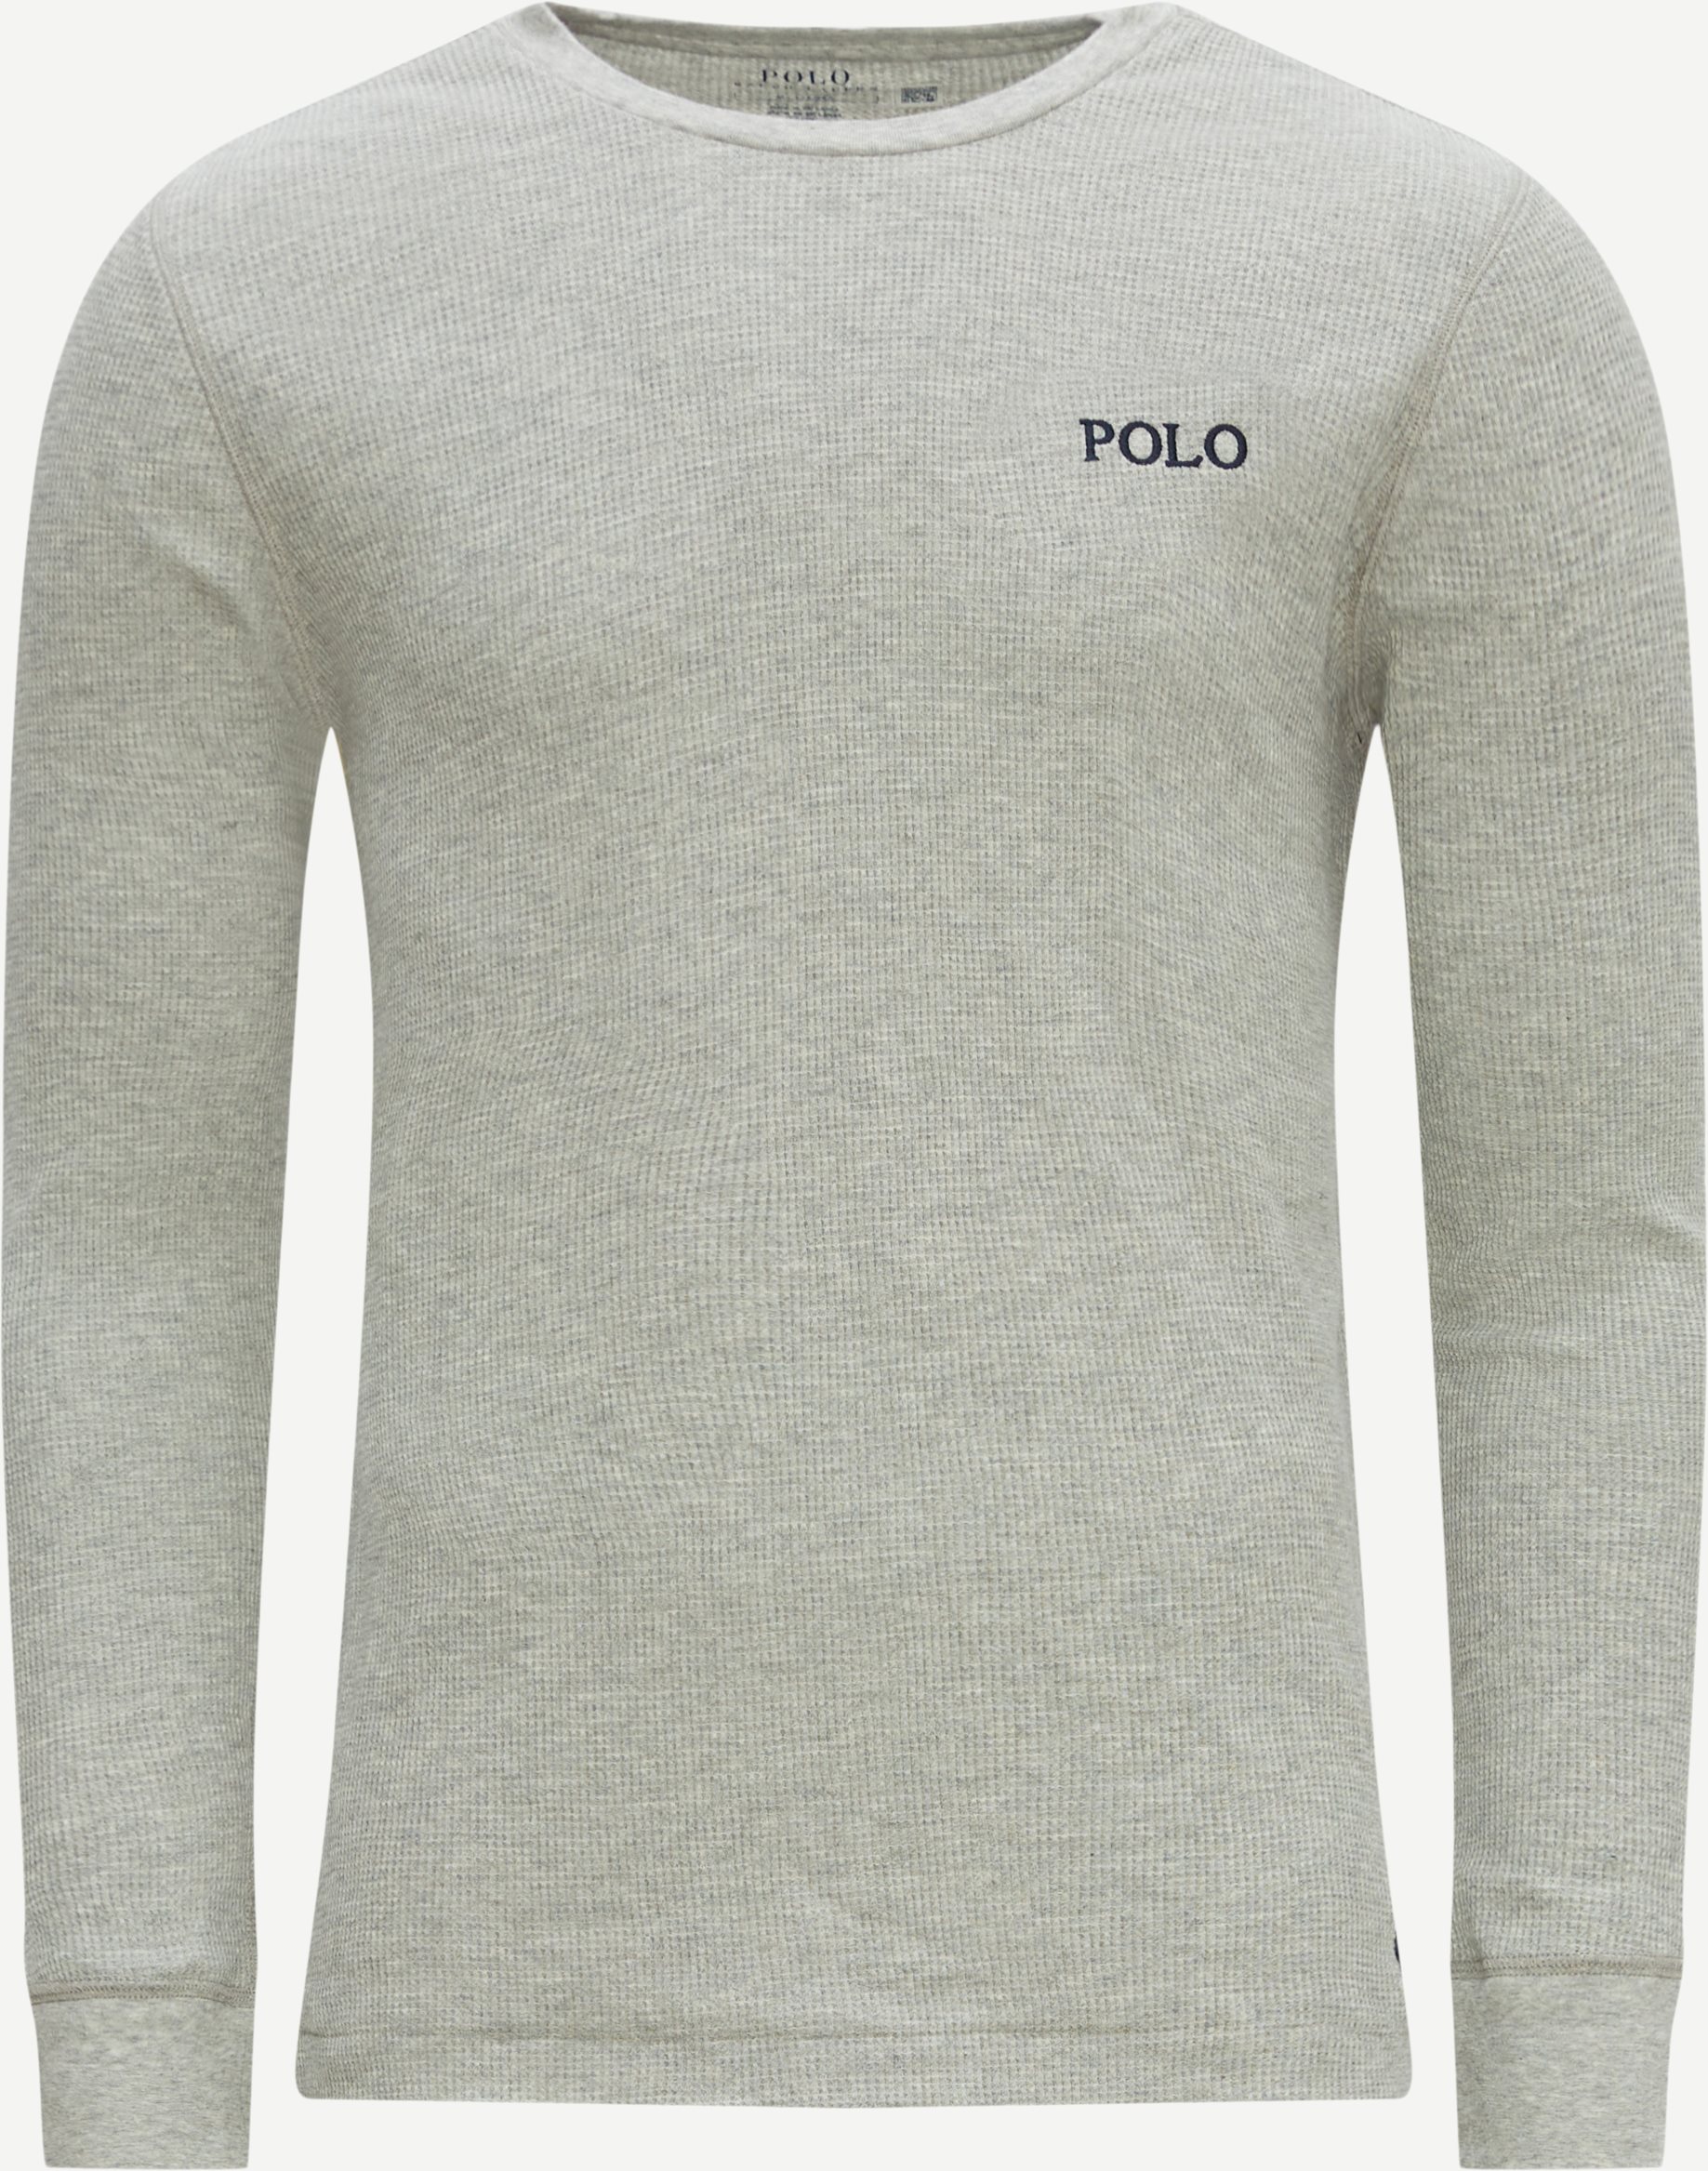 Polo Ralph Lauren T-shirts 714899615 Grå